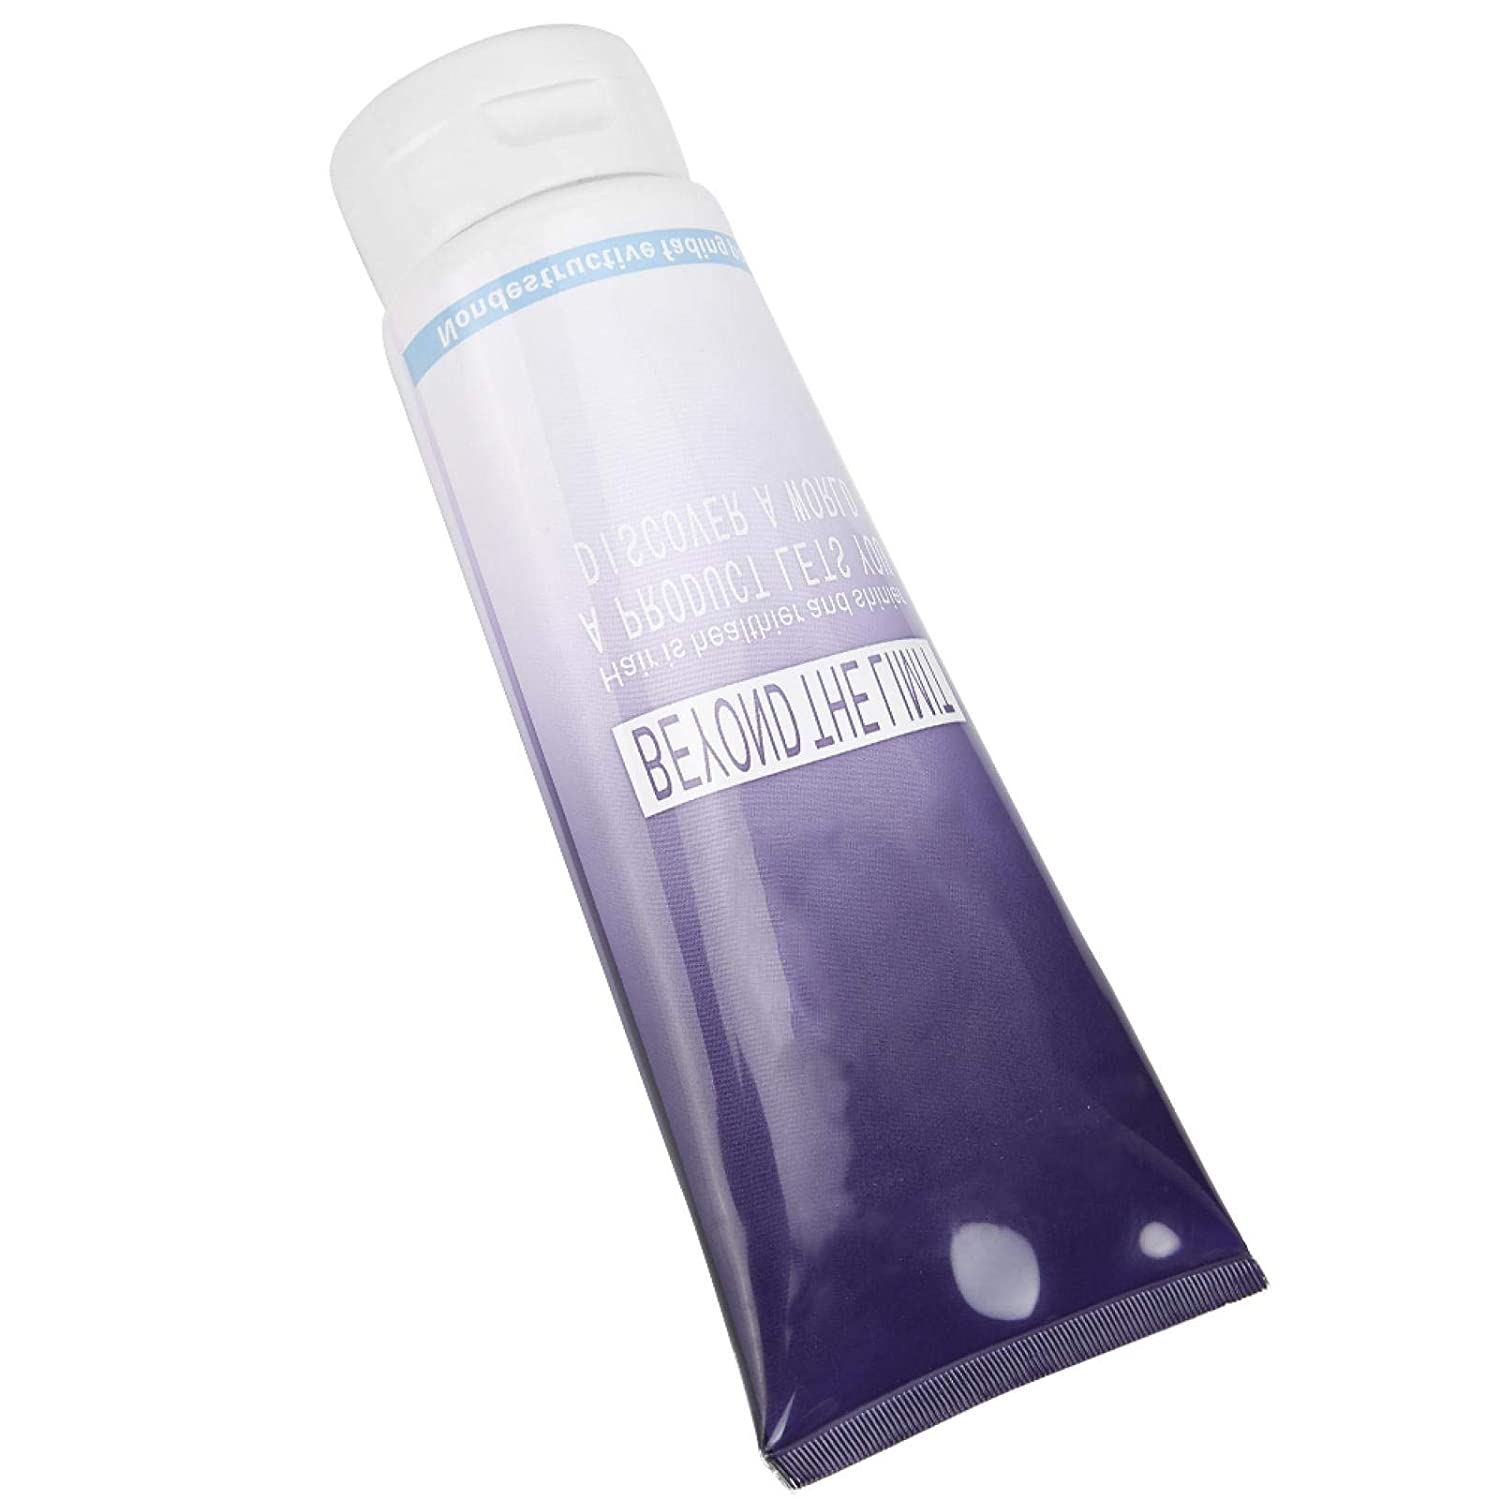 Emoshayoga Hair Bleaching Cream, 400 ml Practical Hair Bleaching Shampoo Portable Hair Styling for Home Use